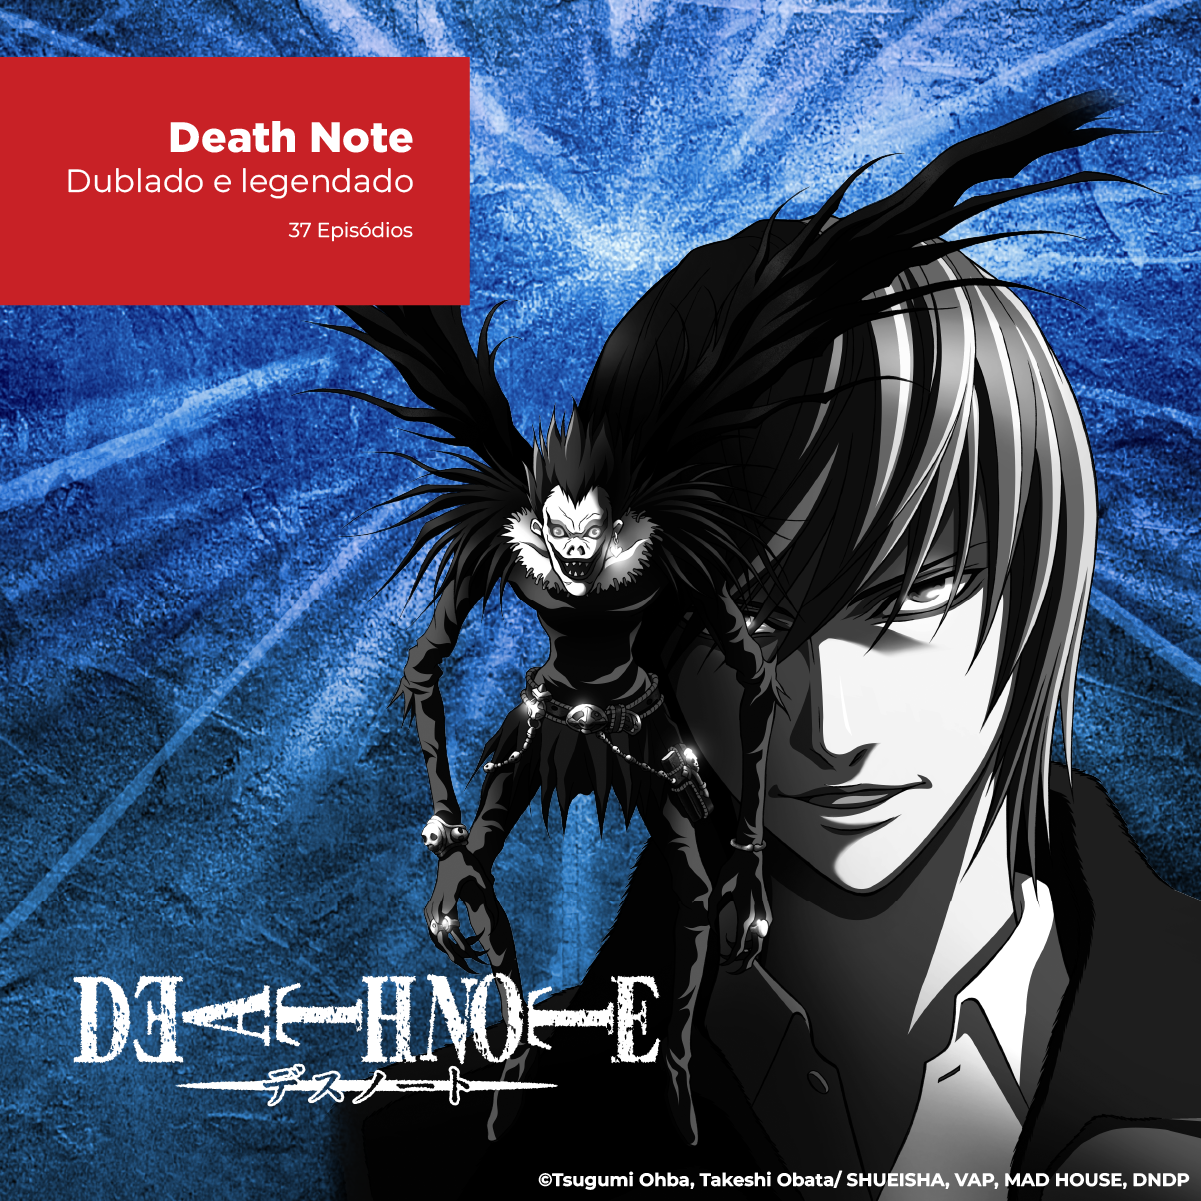 DVD - Death Note - Dublado e Legendado